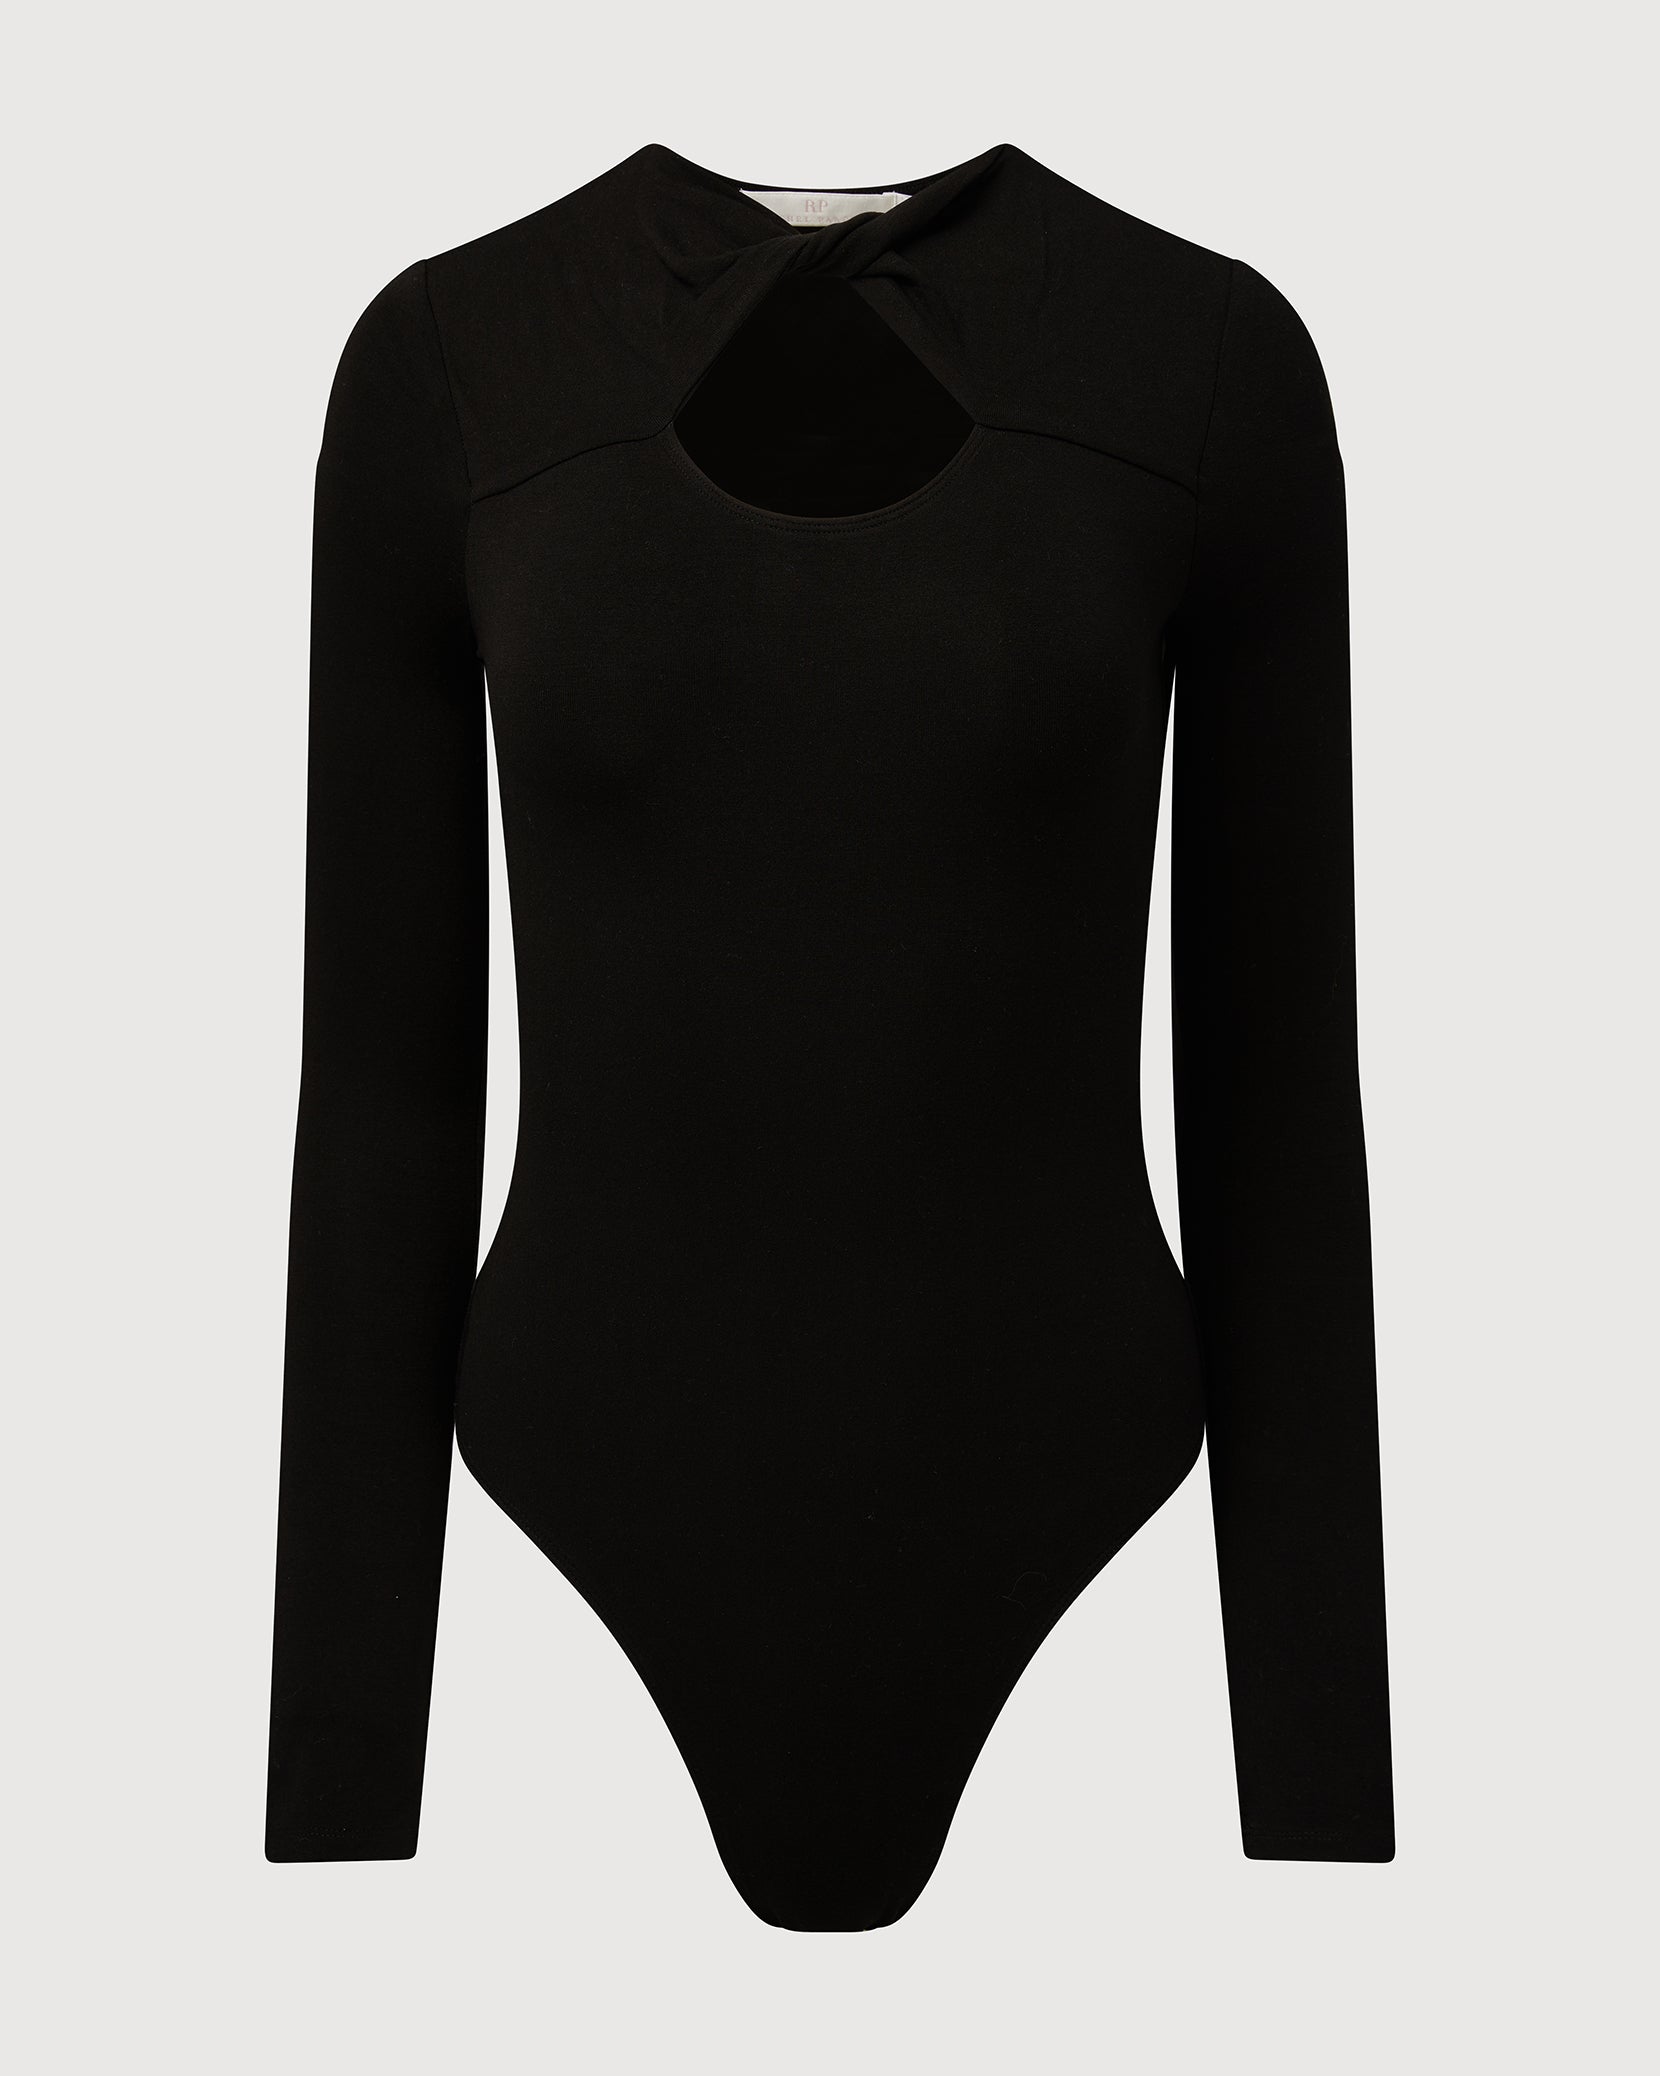 Square Neck Body Suit – Rachel Parcell, Inc.